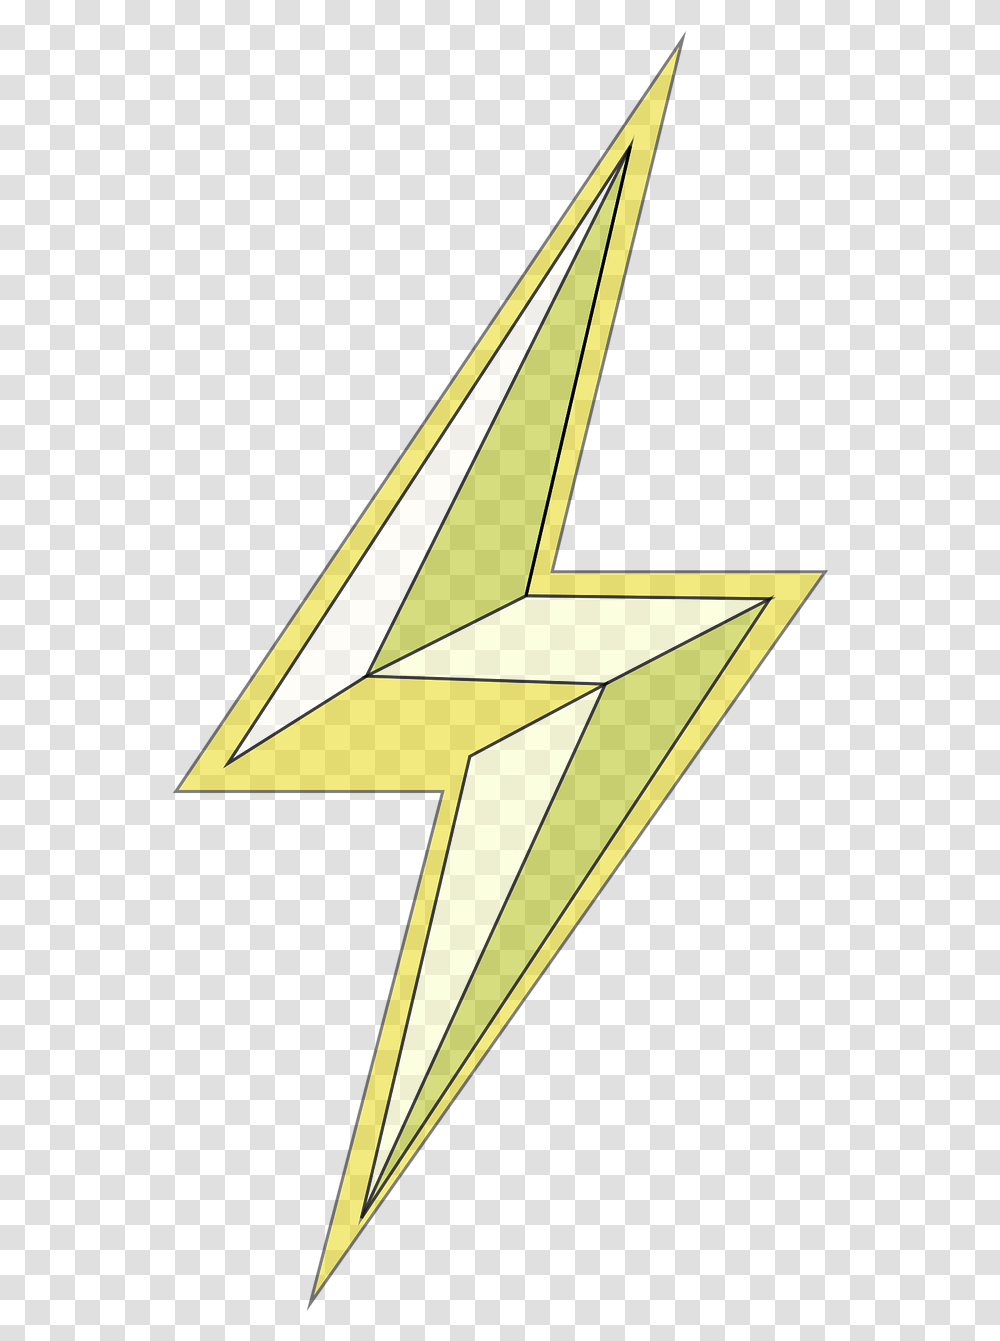 Lightning Bolt Electricity Lightning Lightning Bolt Power, Symbol, Star Symbol, Number, Text Transparent Png